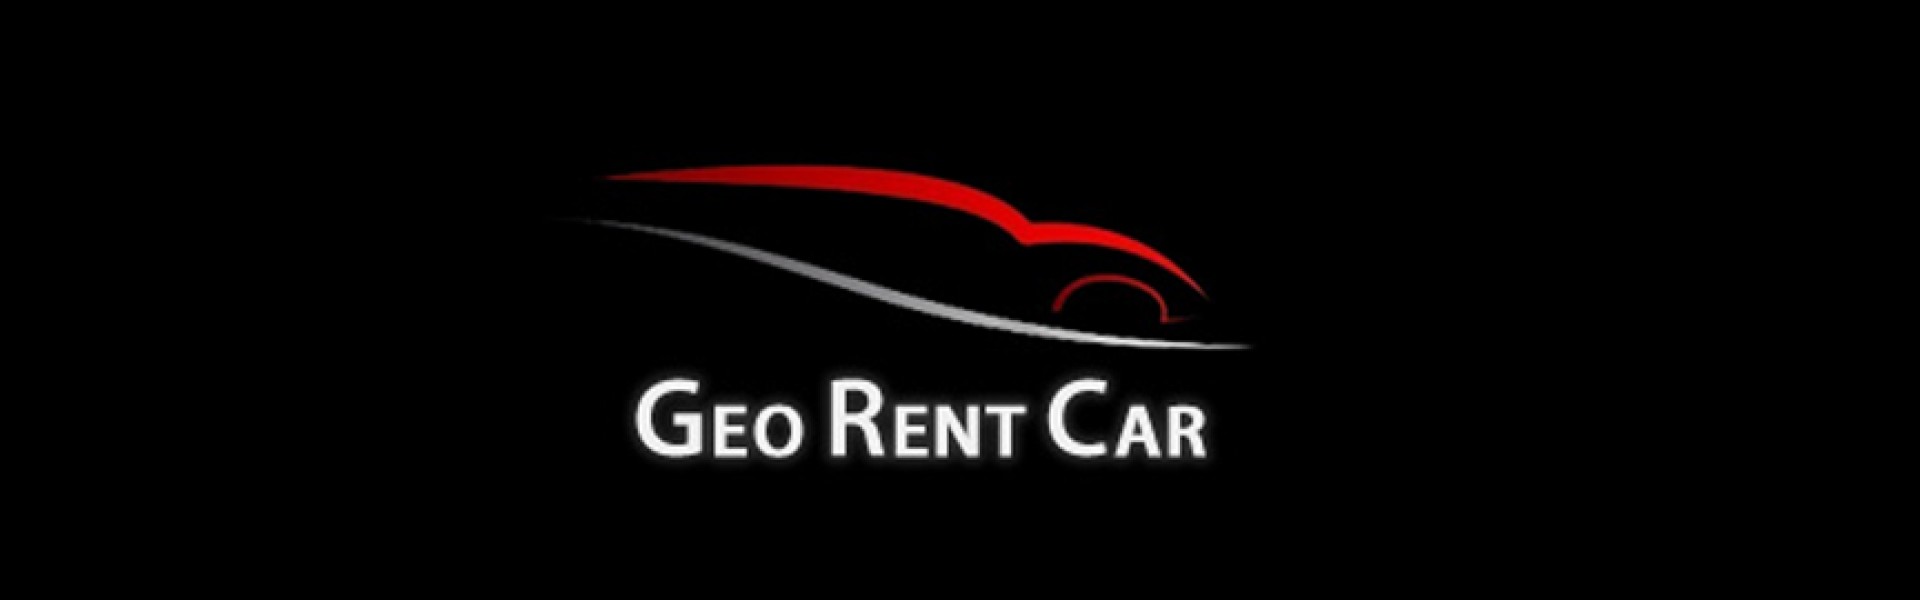 Geo Rent Car  